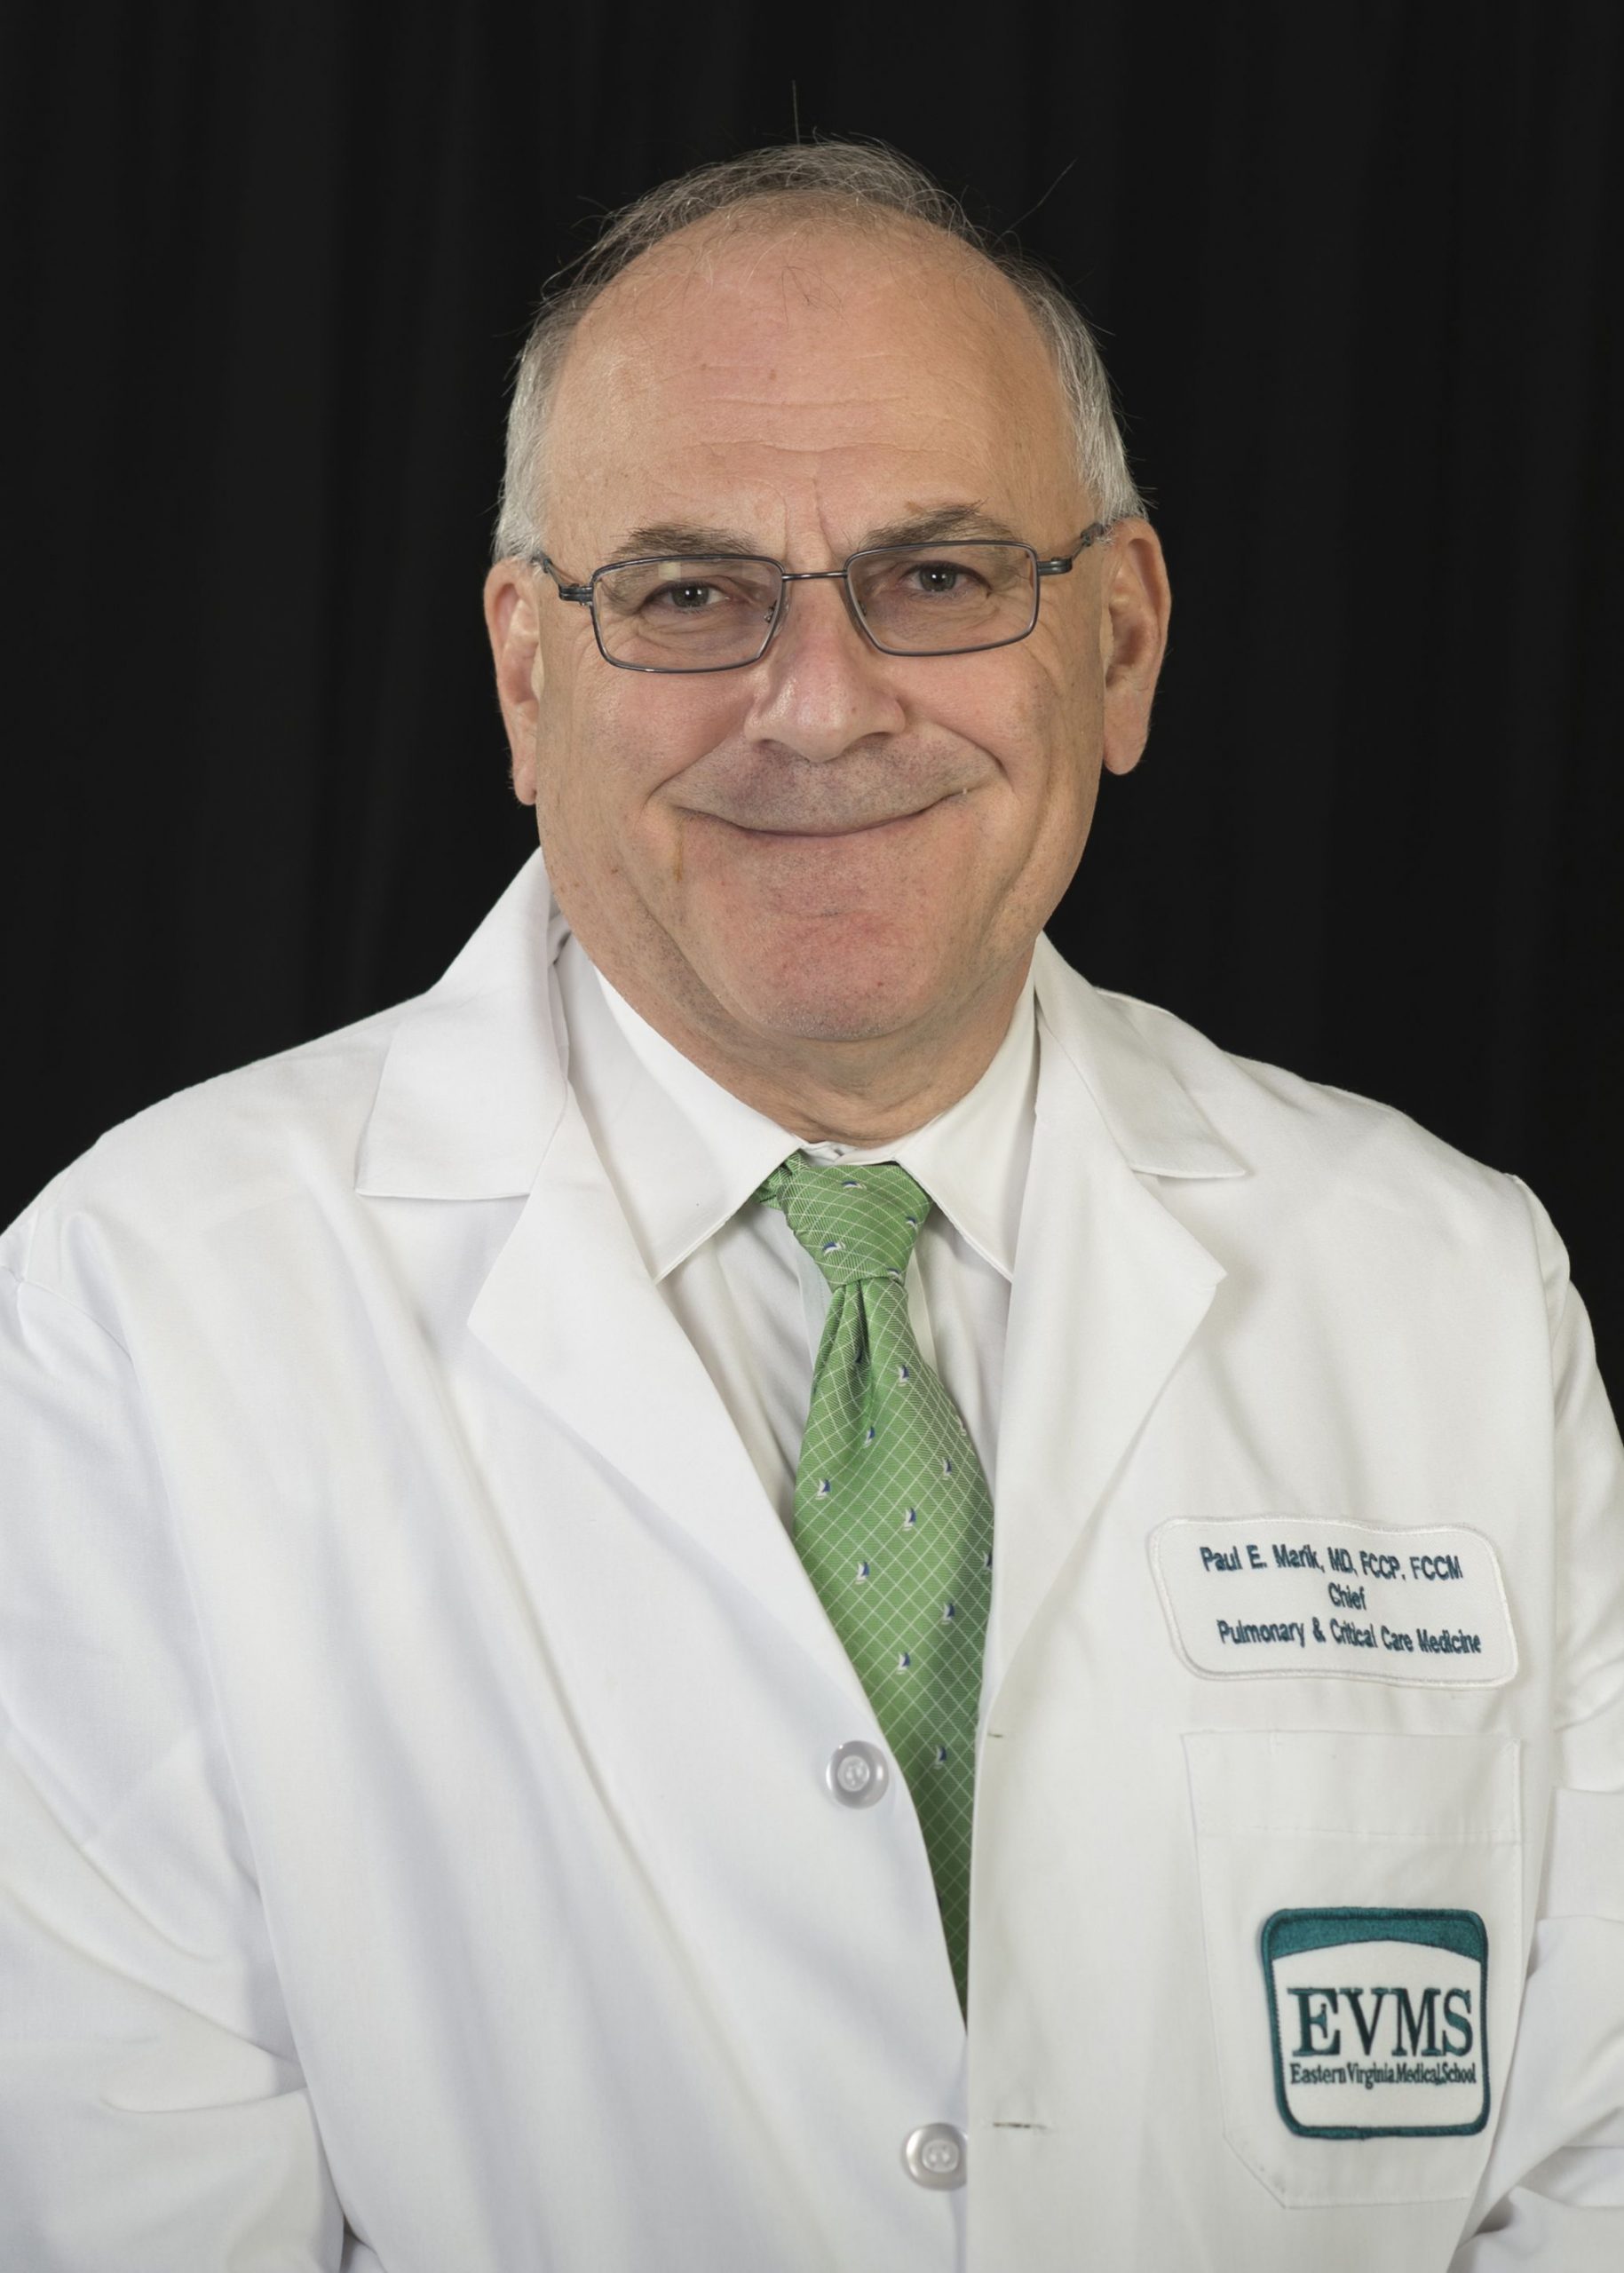 Dr. Paul Marik